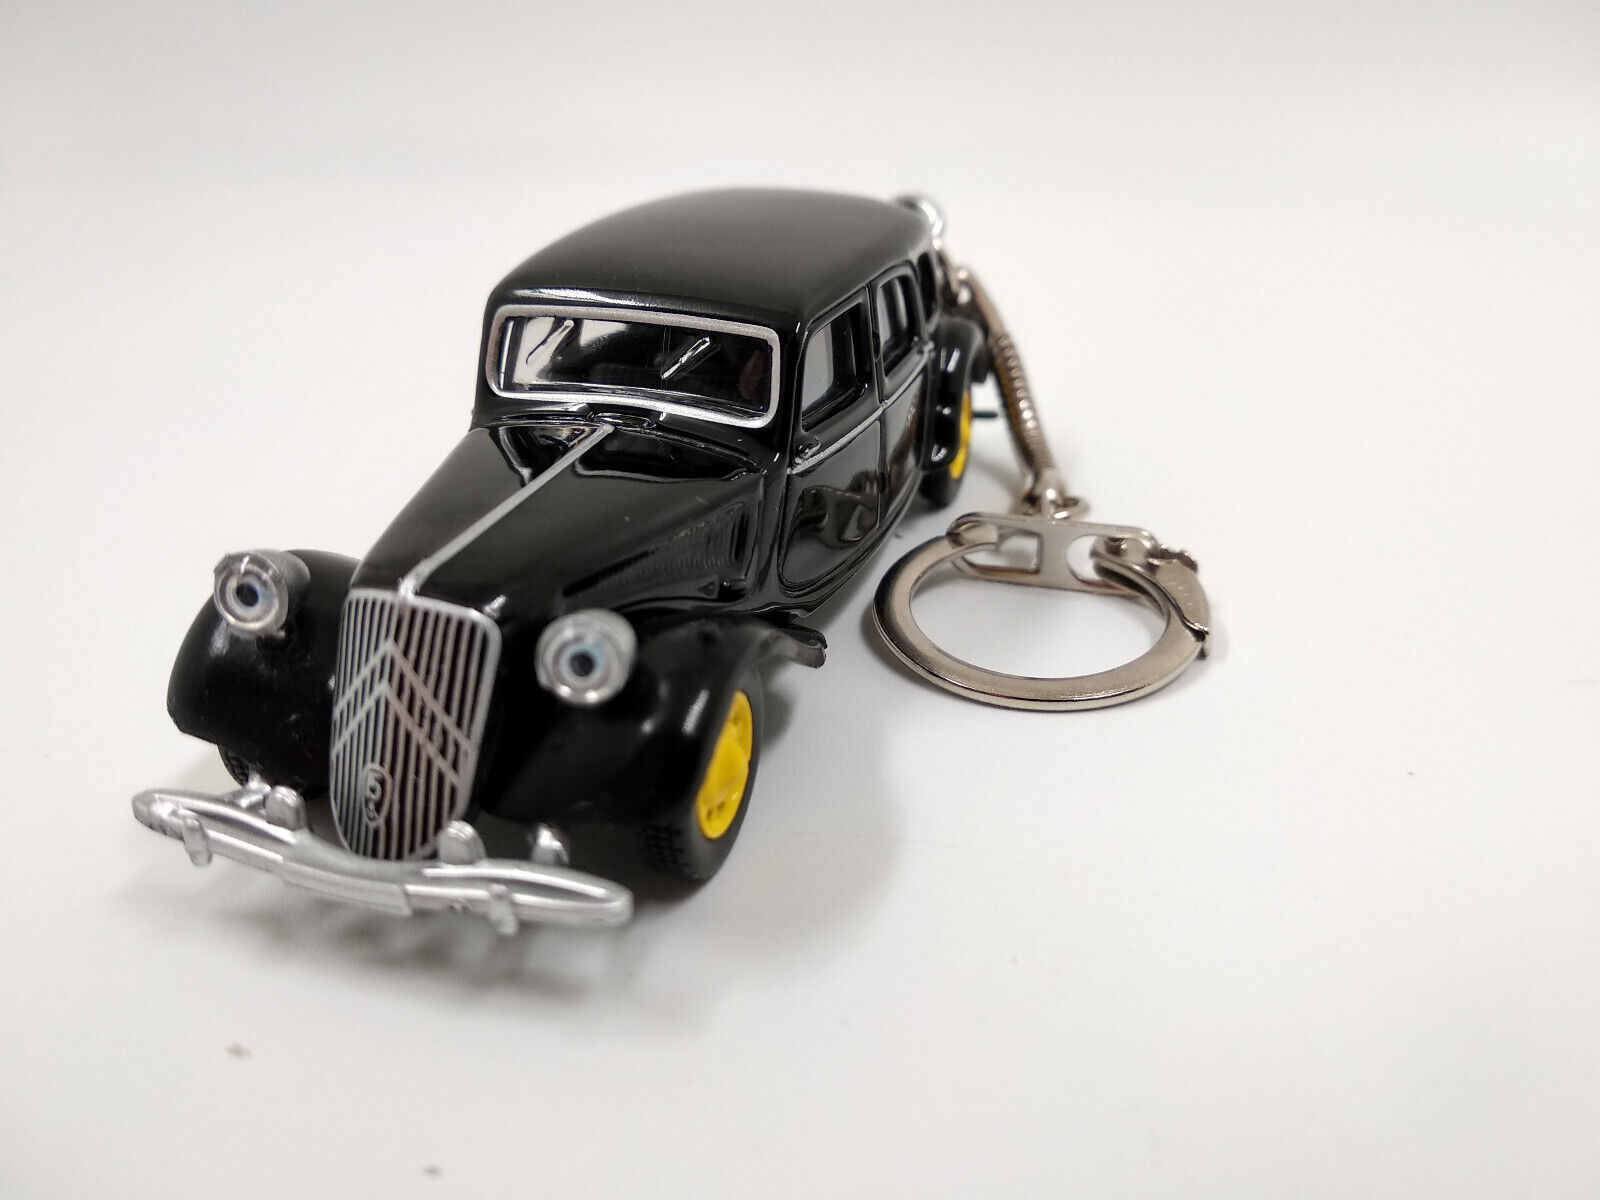 Porte clé Citroën Traction 1939 noir en métal idée cadeau sympa • Ateepique